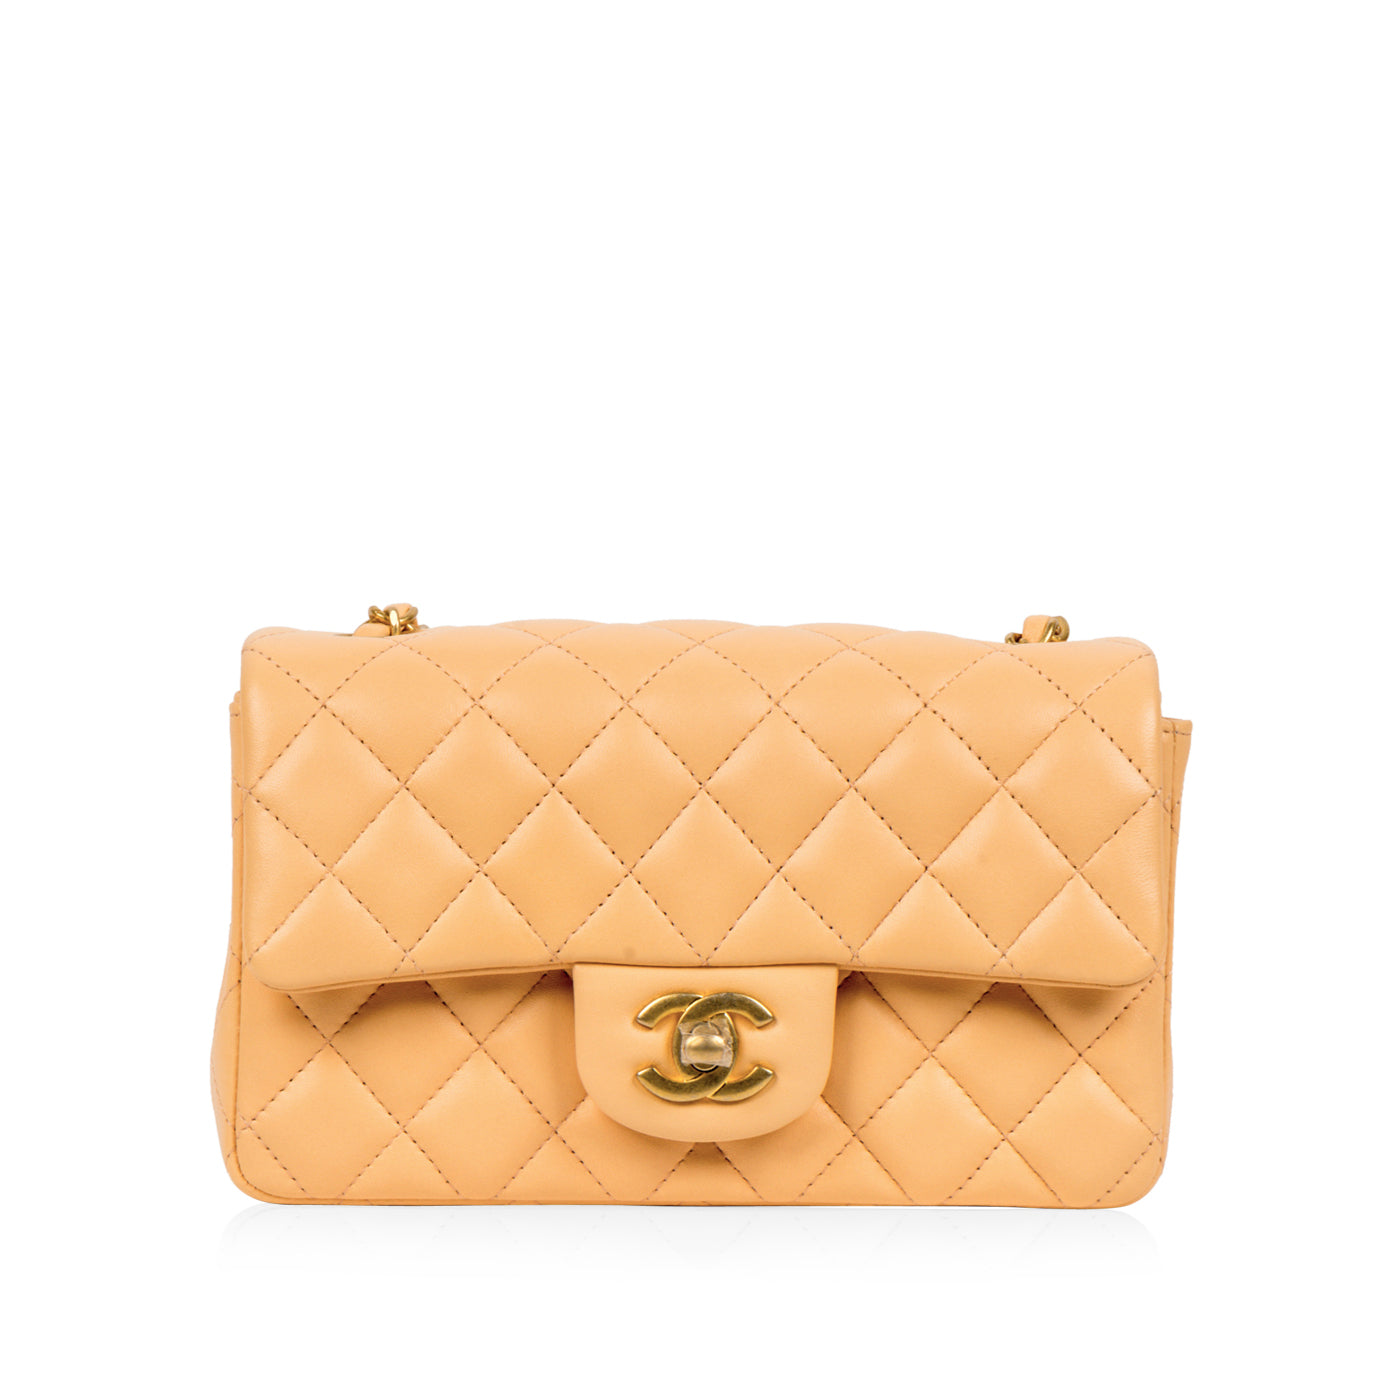 Chanel - Classic Flap Bag - Mini Rectangular - Peach - GHW